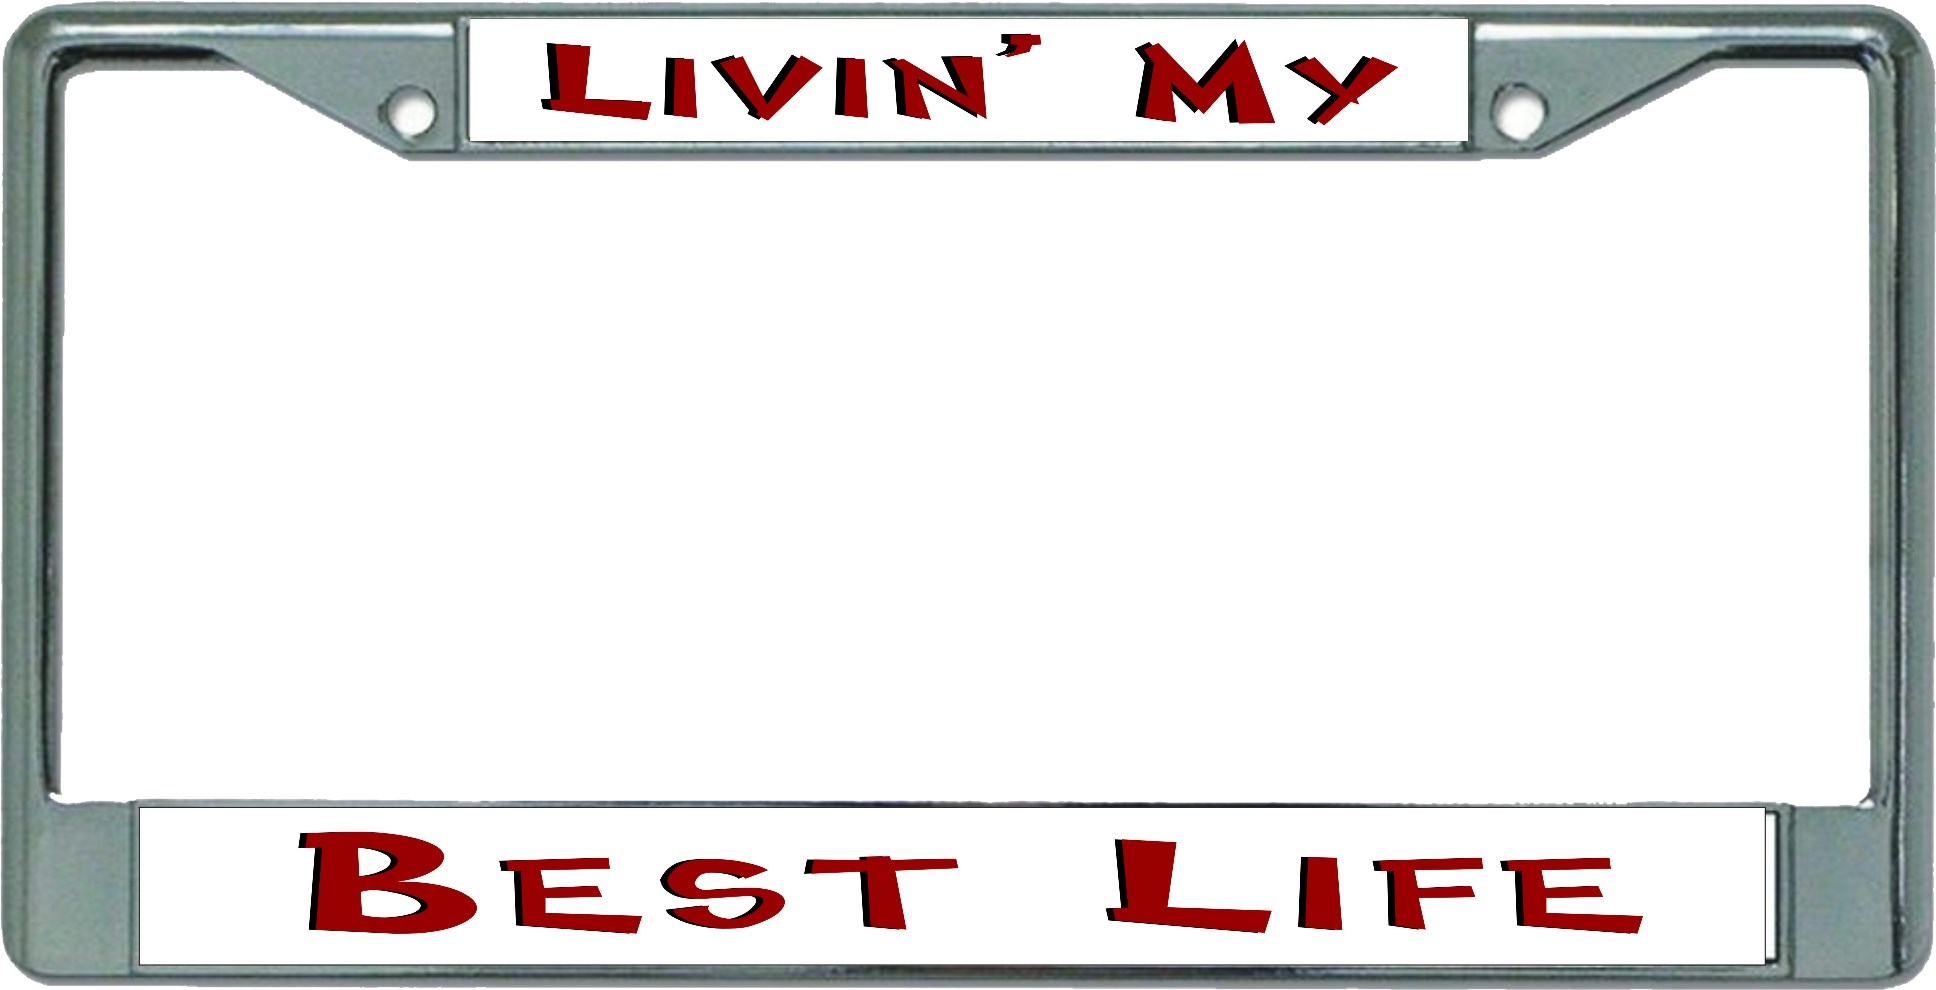 Livin' My Best Life Chrome License Plate FRAME